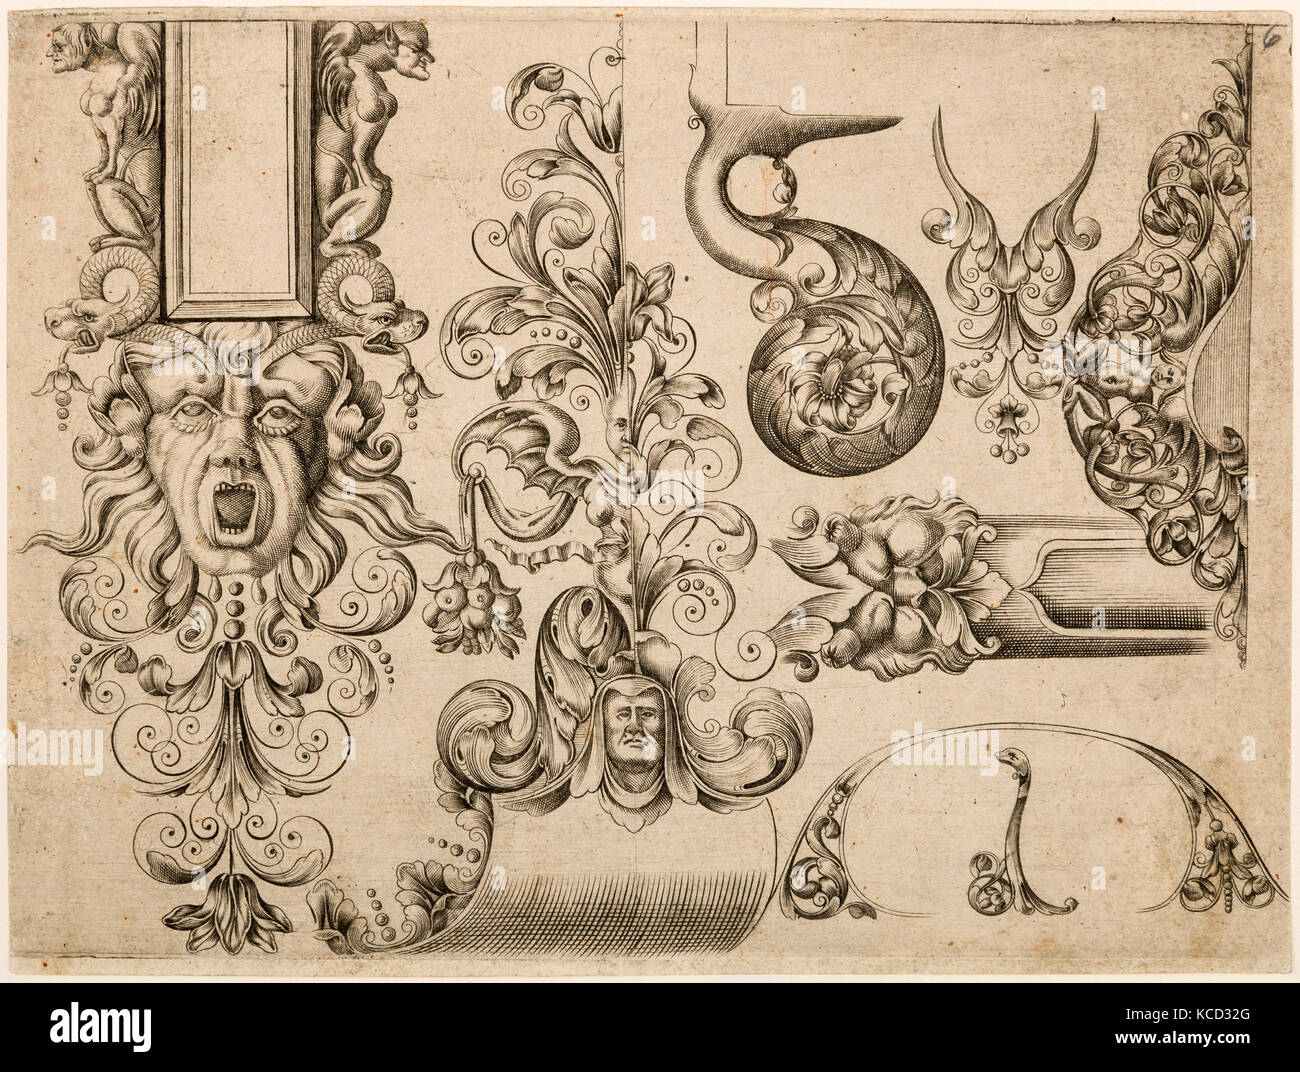 Plate Six from Plusieurs Models des plus nouuelles manieres qui sont en usage en l'Art de Arquebuzerie, ca. 1660 Stock Photo